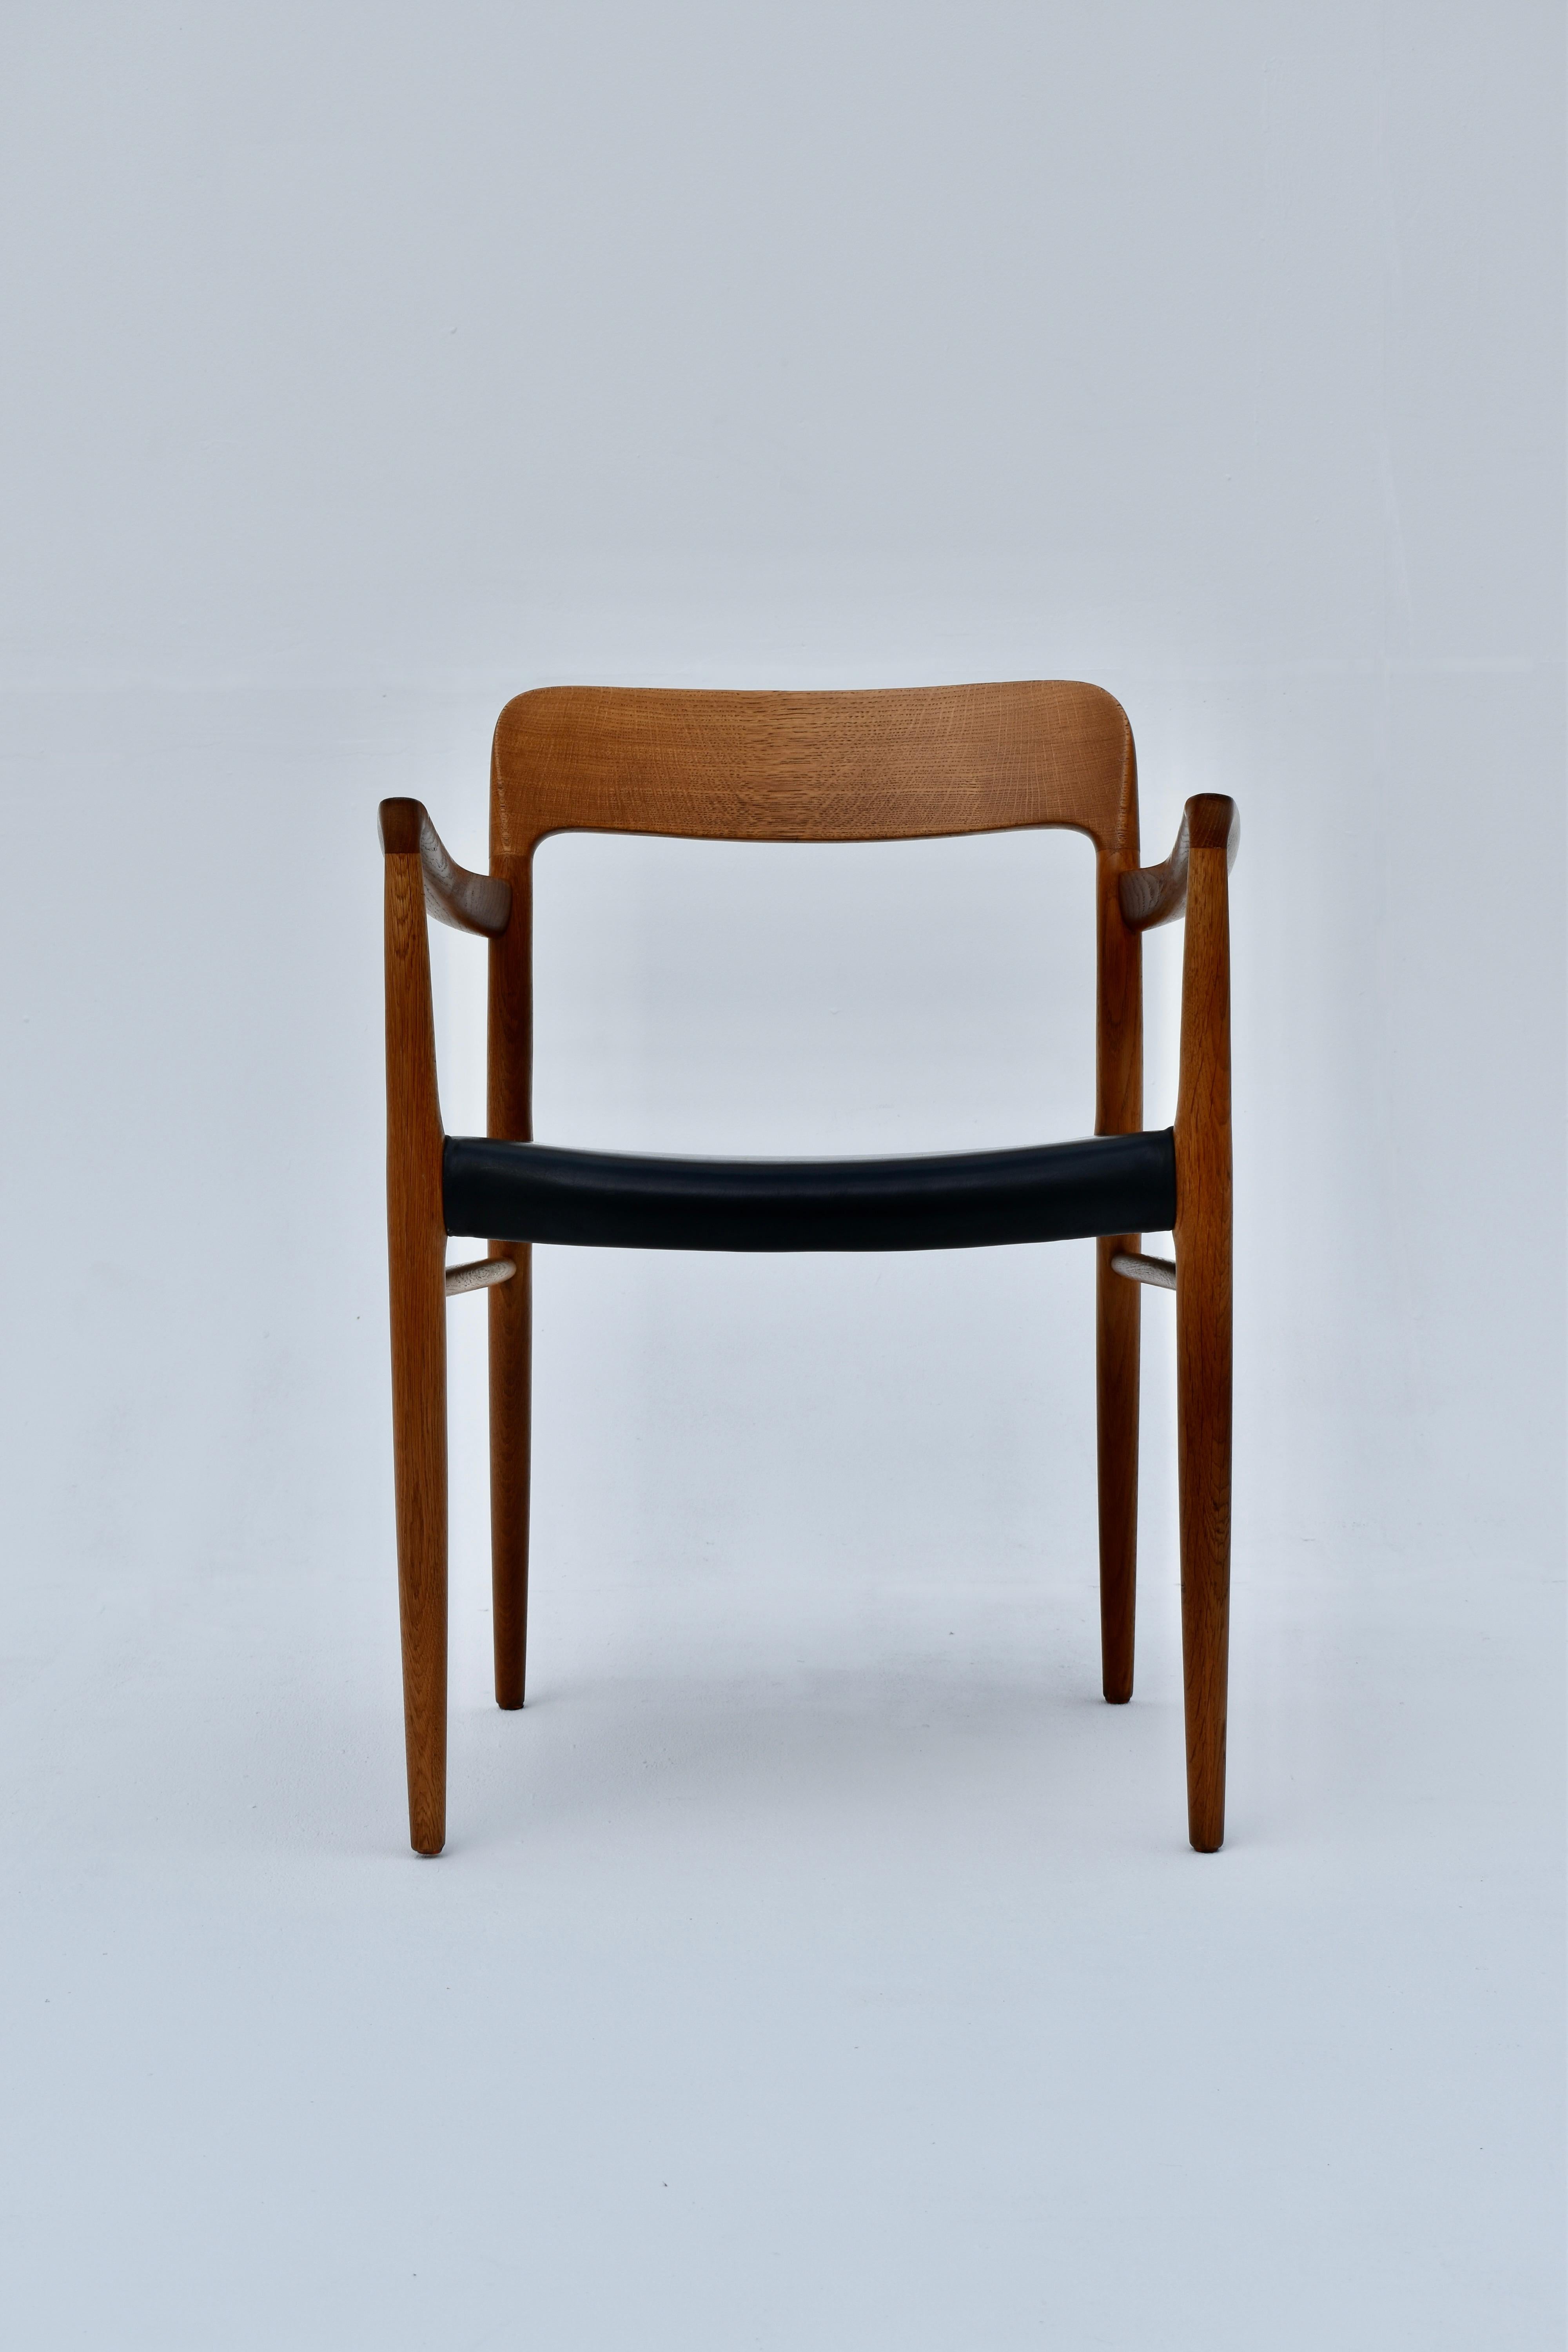 Ein sehr hübscher und fein gearbeiteter Stuhl, der in den frühen 50er Jahren von Niels Moller entworfen wurde.

Dieses Design ist ziemlich schwer zu bekommen, vor allem in Eiche angeboten, da die meisten in Teakholz hergestellt wurden.

Das Holz